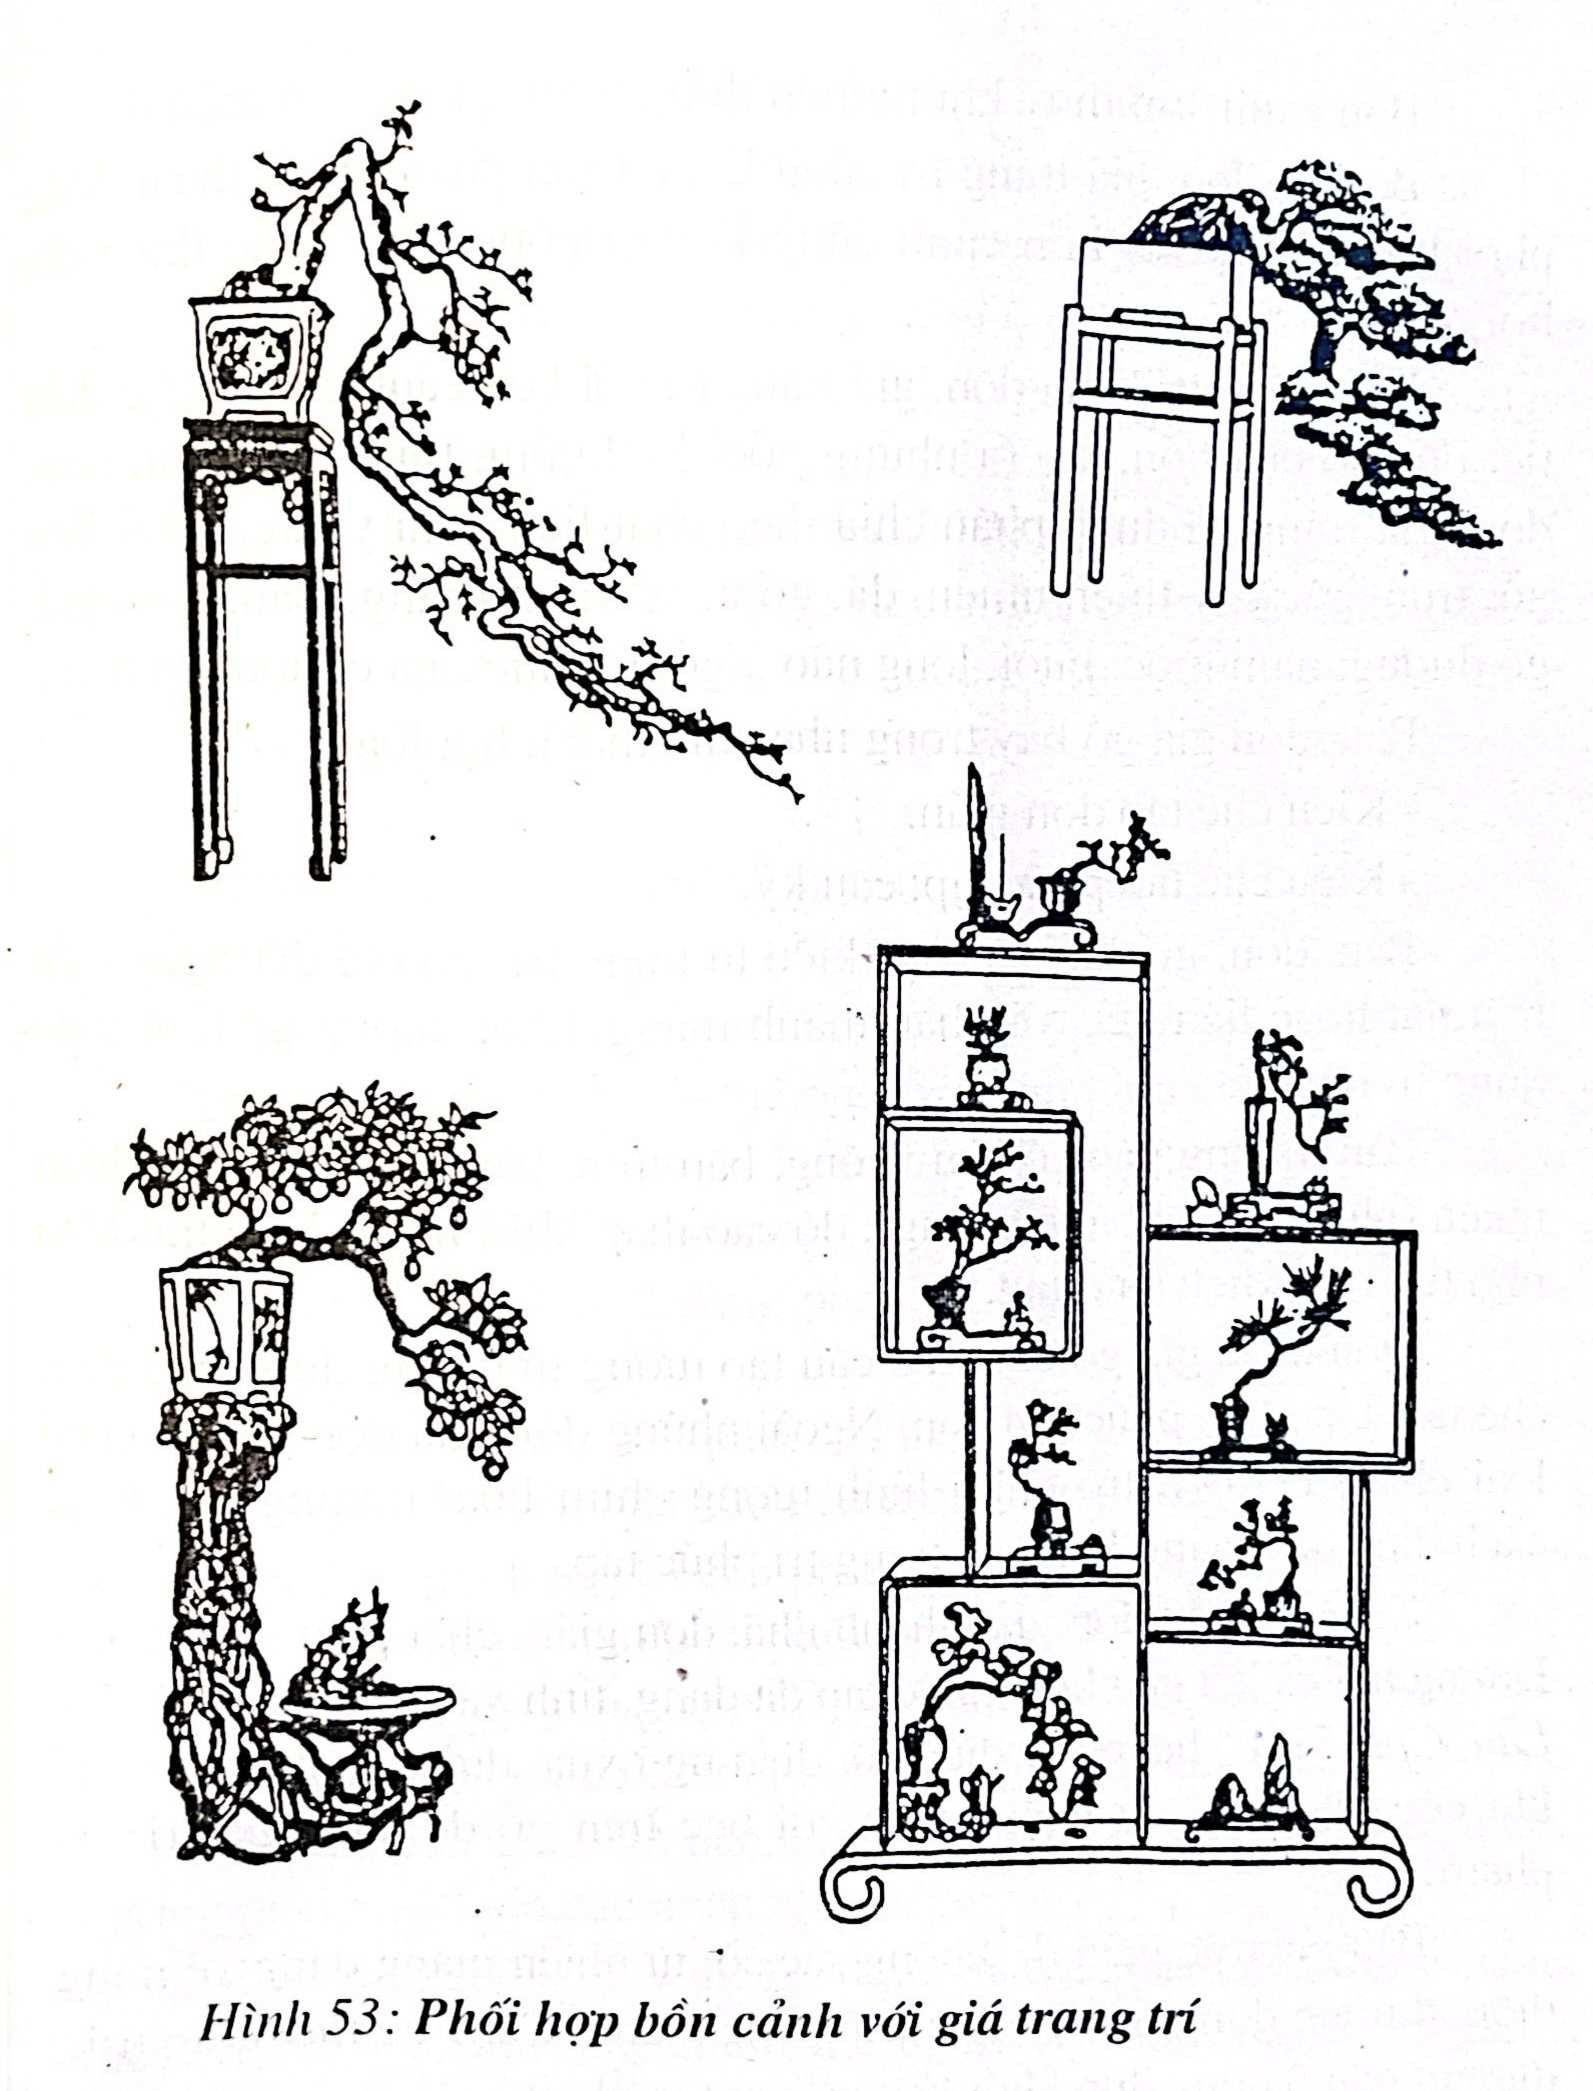 Phối hợp bồn cảnh với giá trang trí bonsai - Trần Hợp